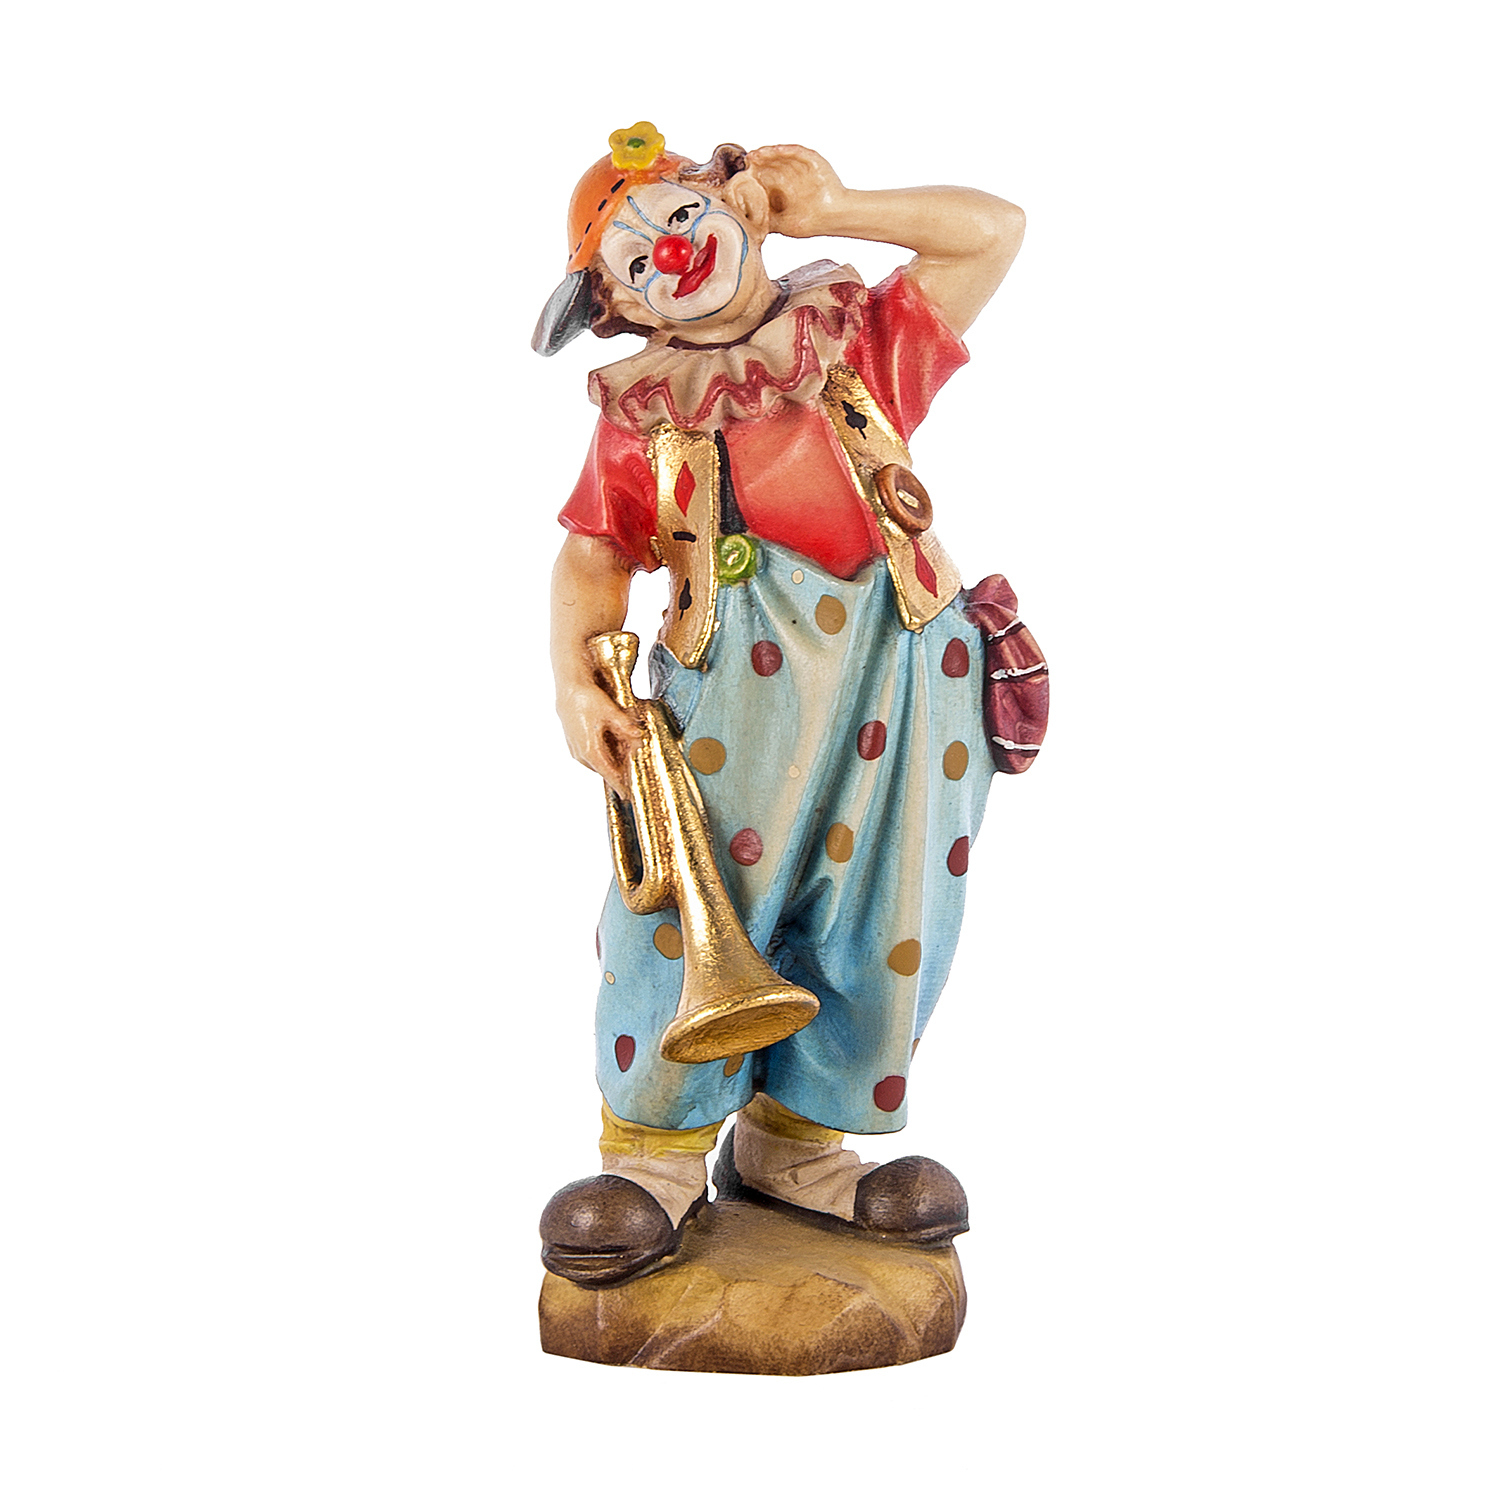  статуэтку клоуна музыканта с трубой 